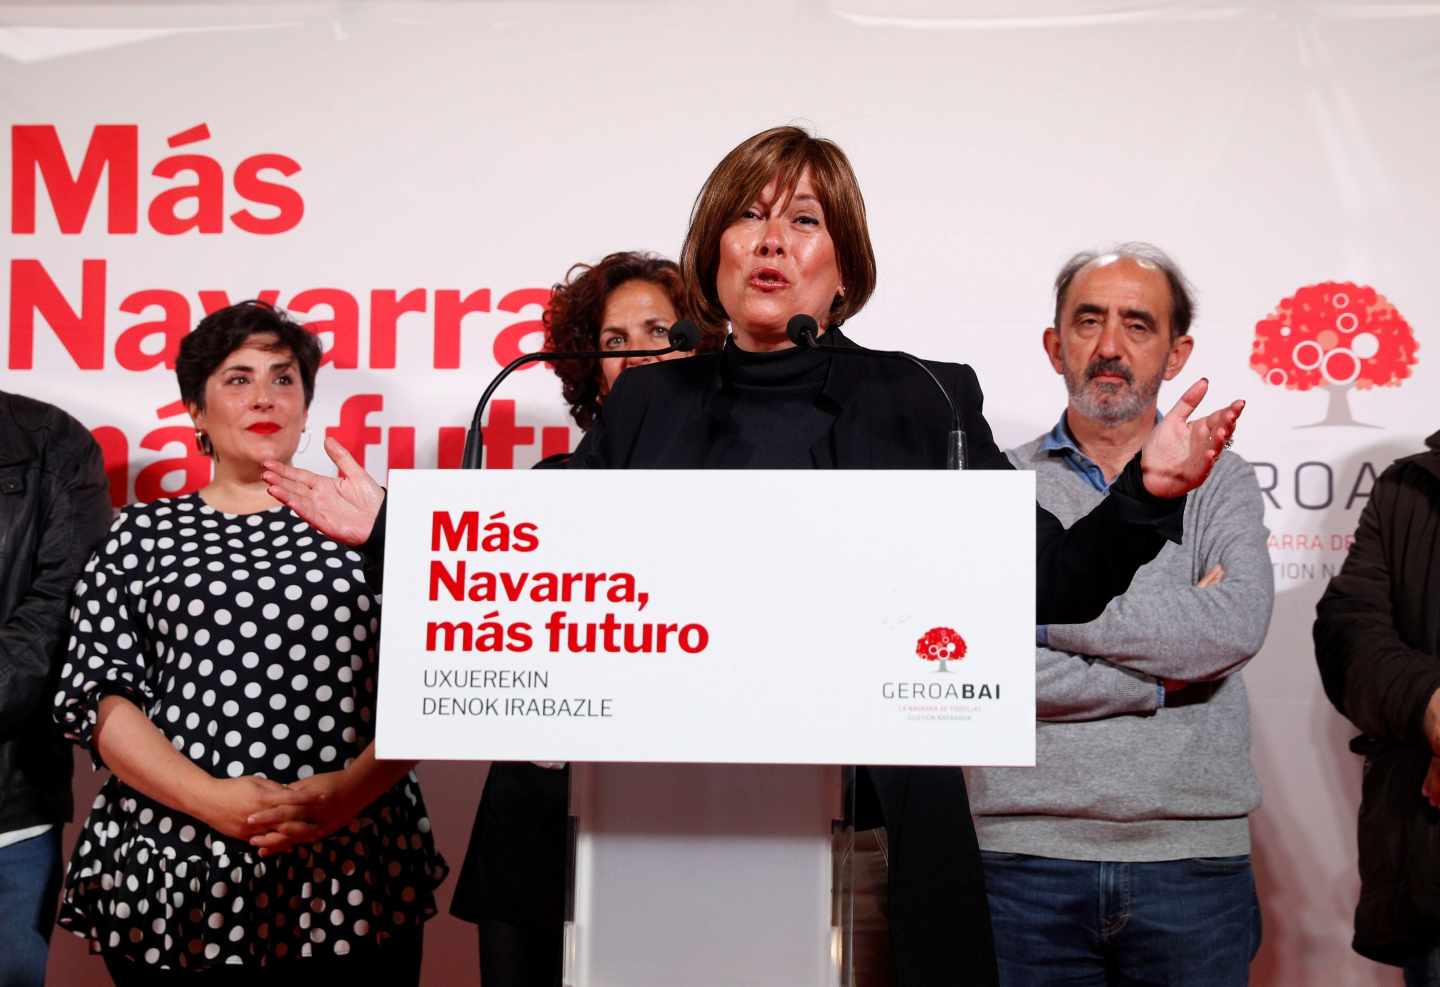 El PP advierte al PSOE de que sería una traición pactar con los abertzales en Navarra